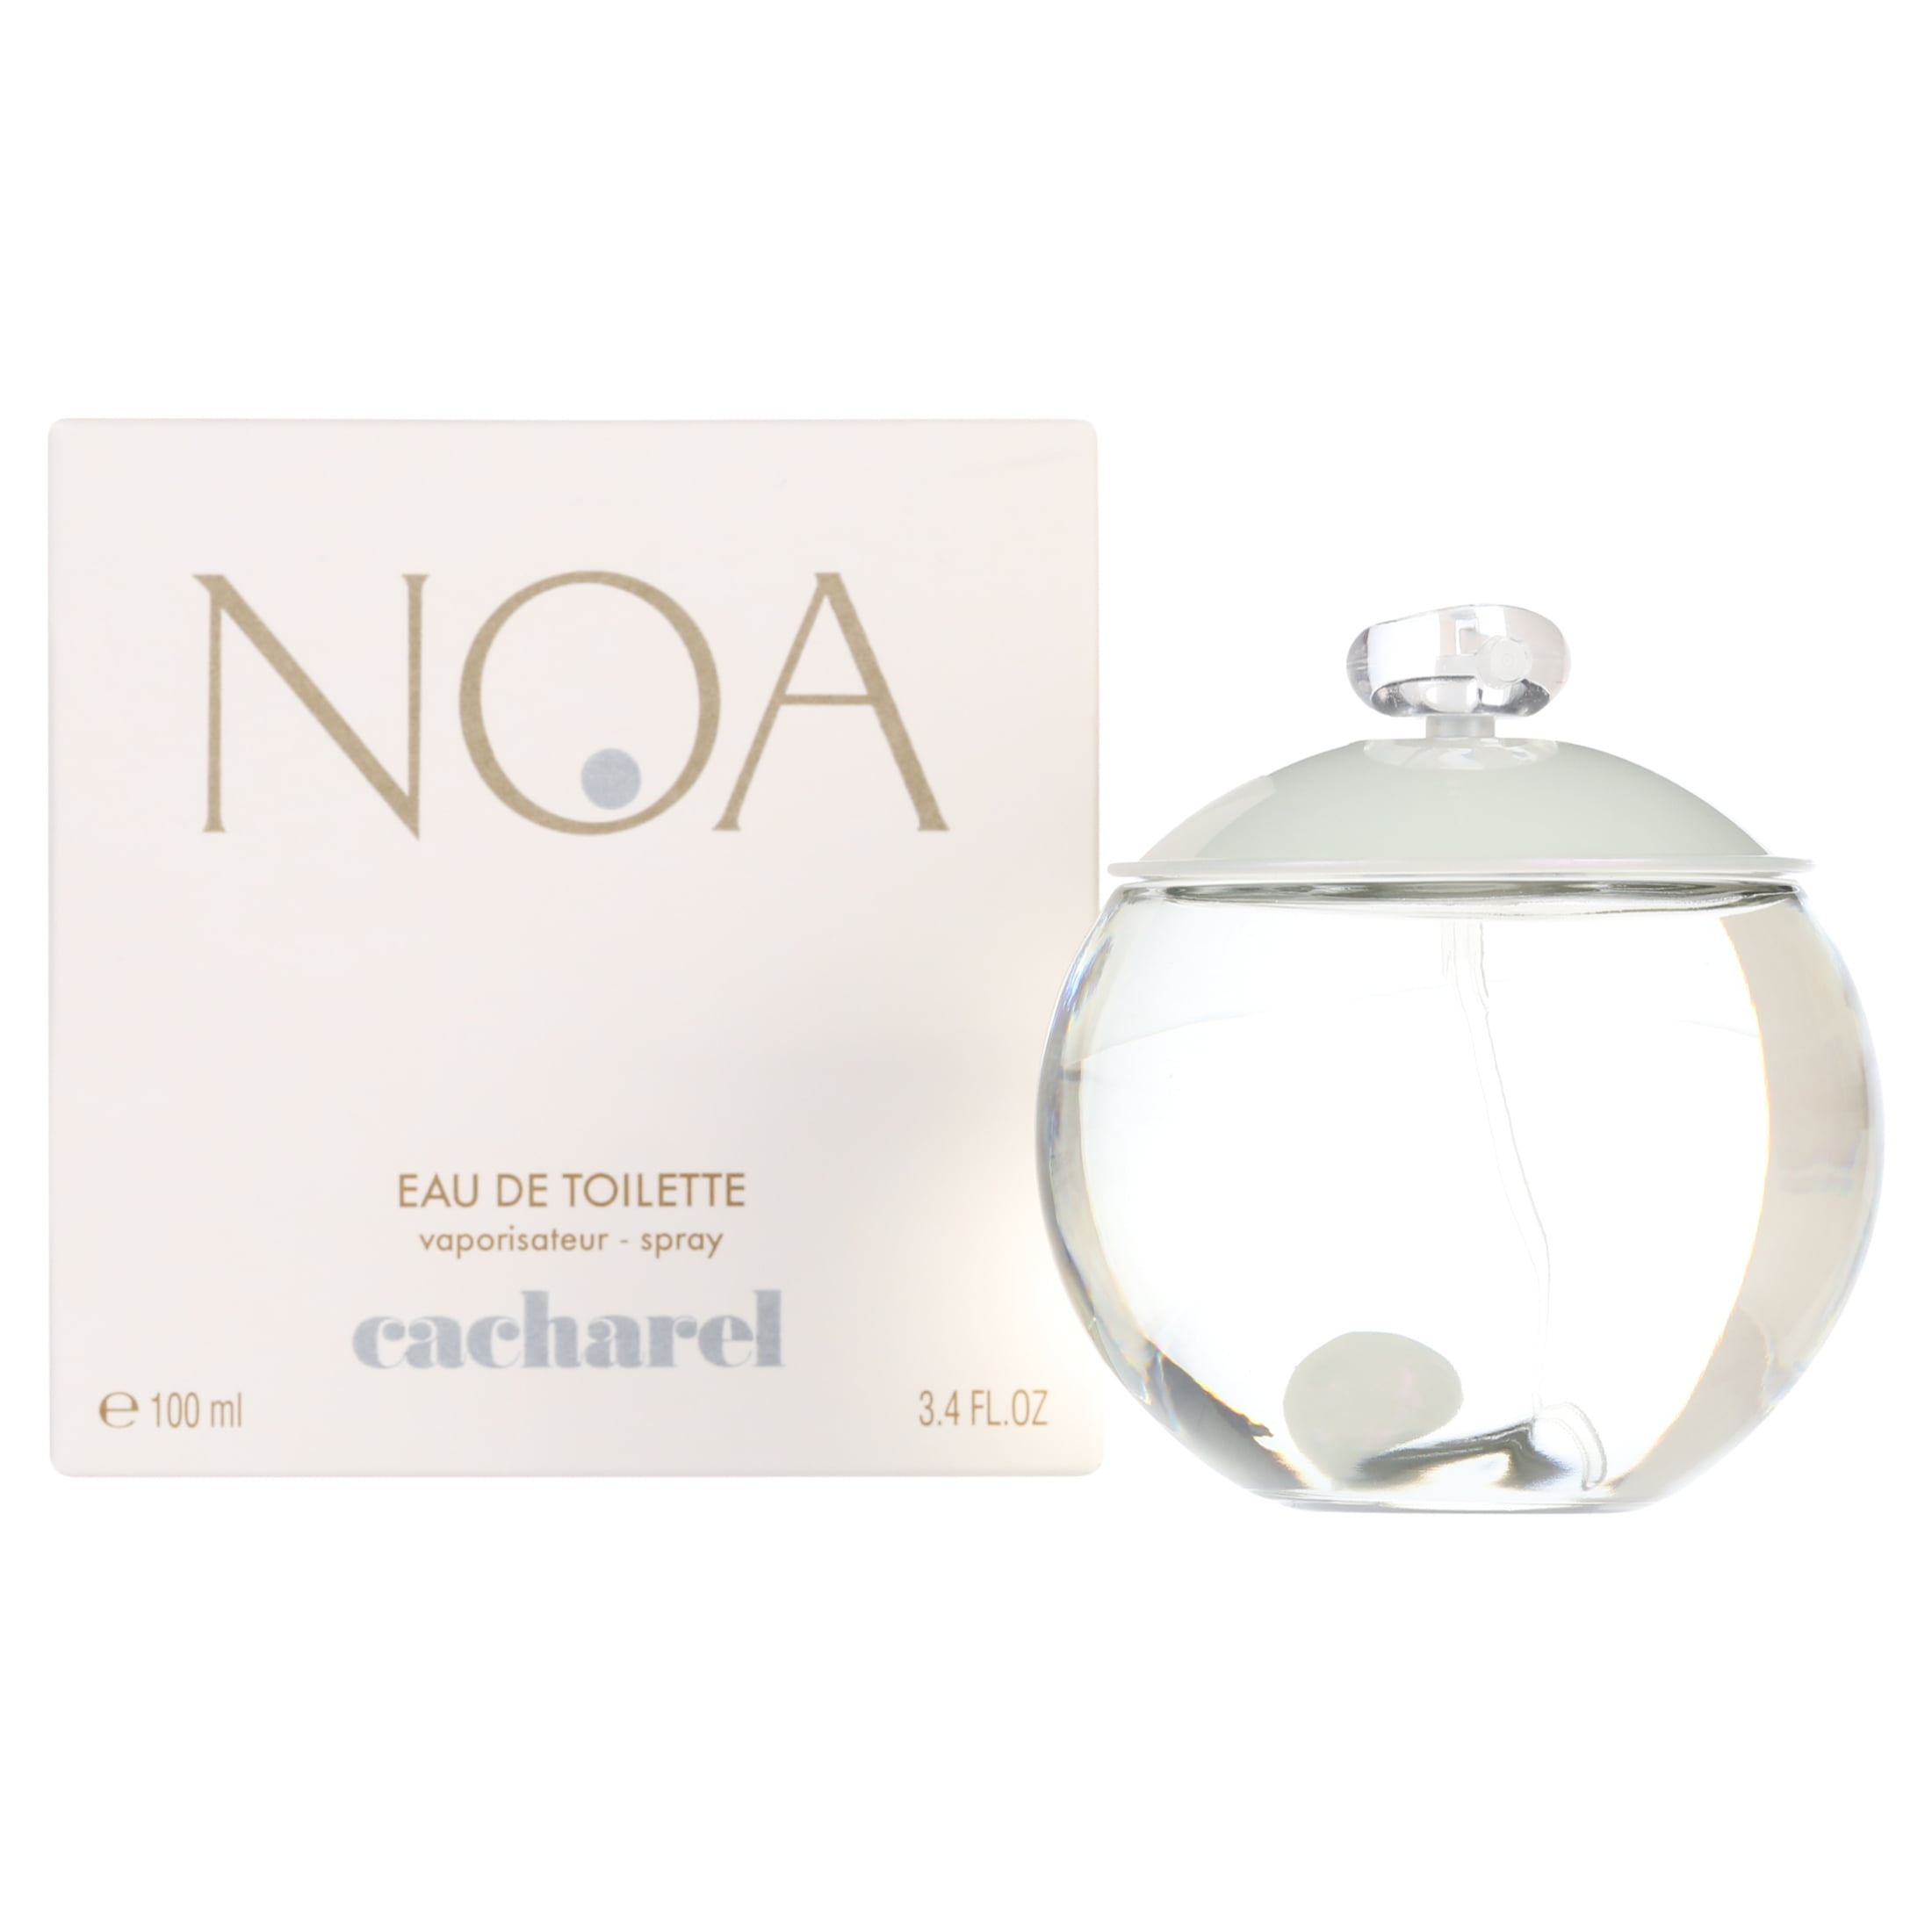 Cacharel Noa de Perfume for Women, 3.4 oz - Walmart.com